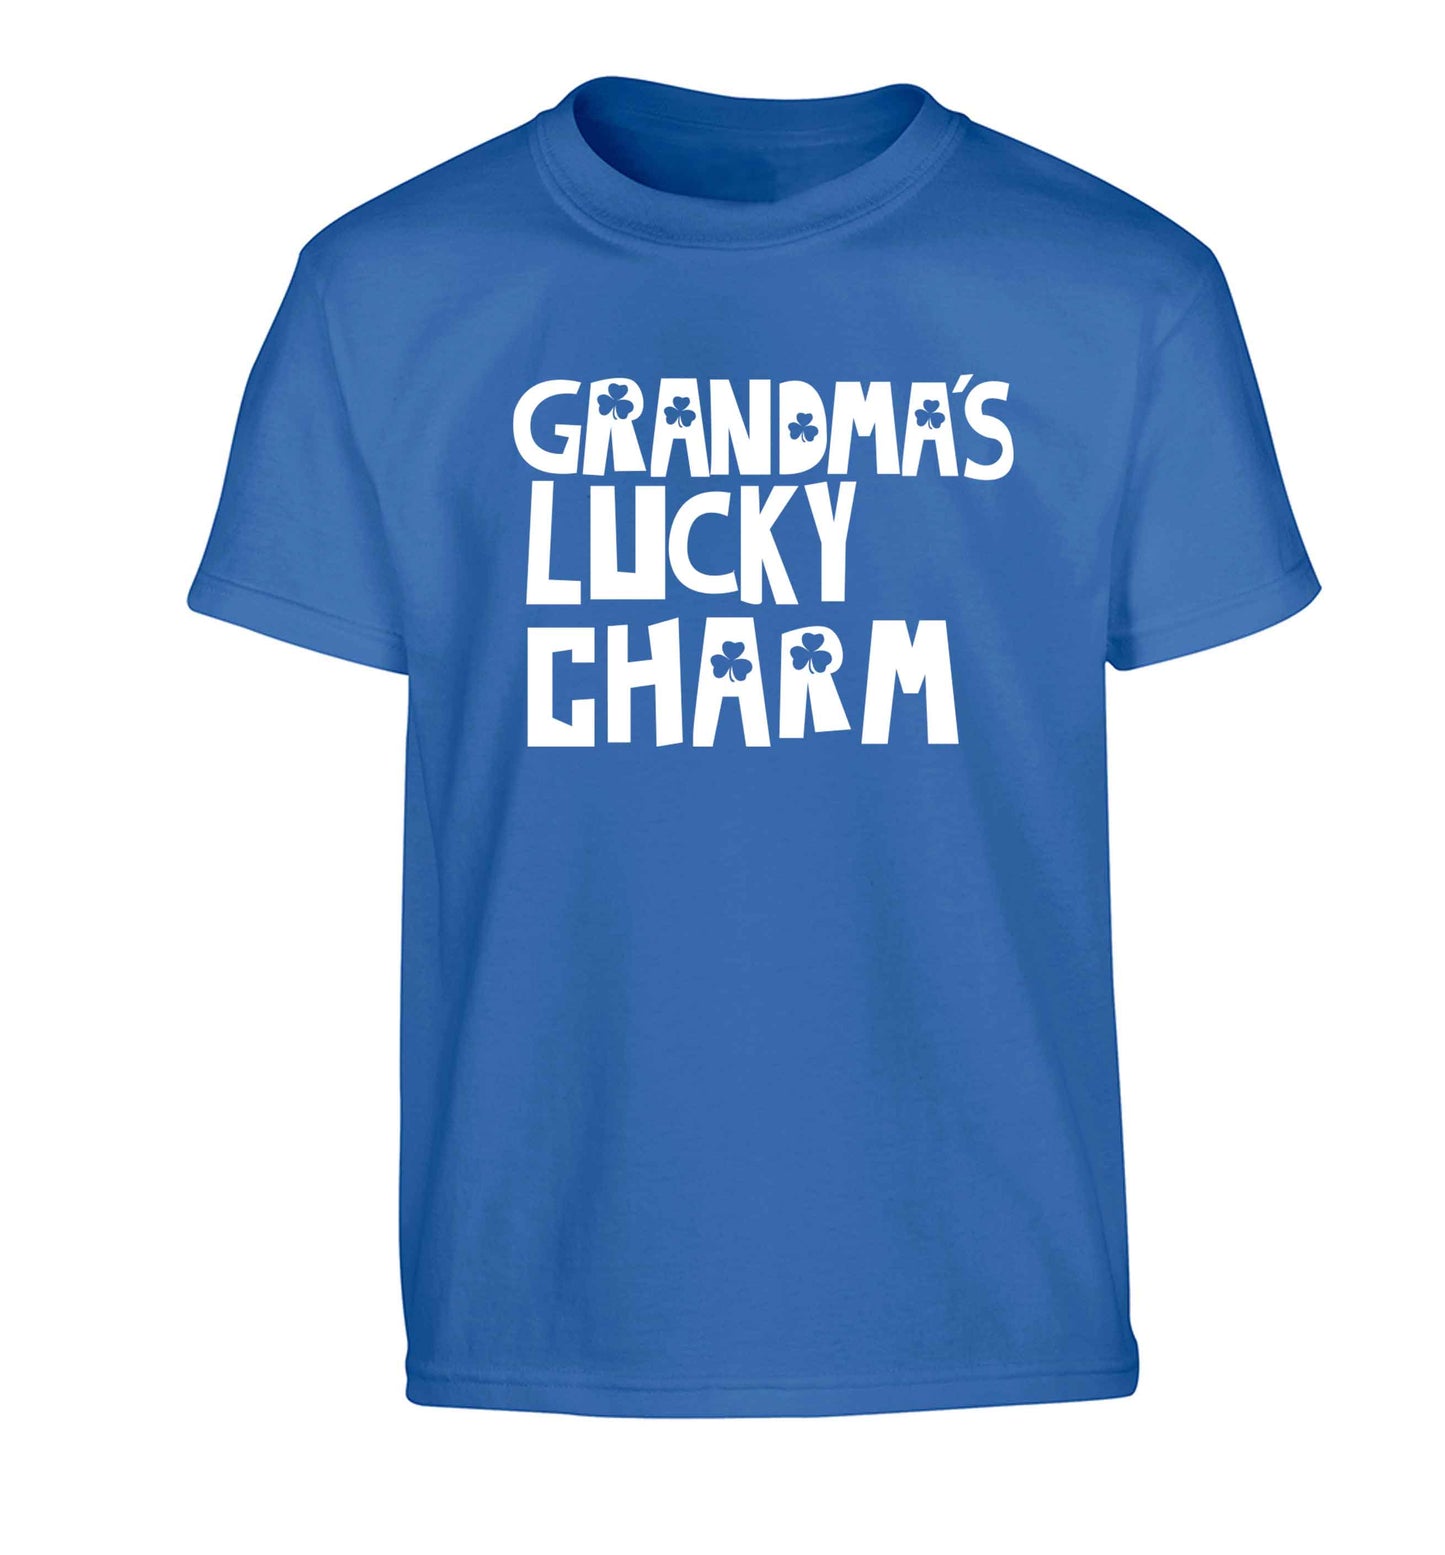 Grandma's lucky charm Children's blue Tshirt 12-13 Years